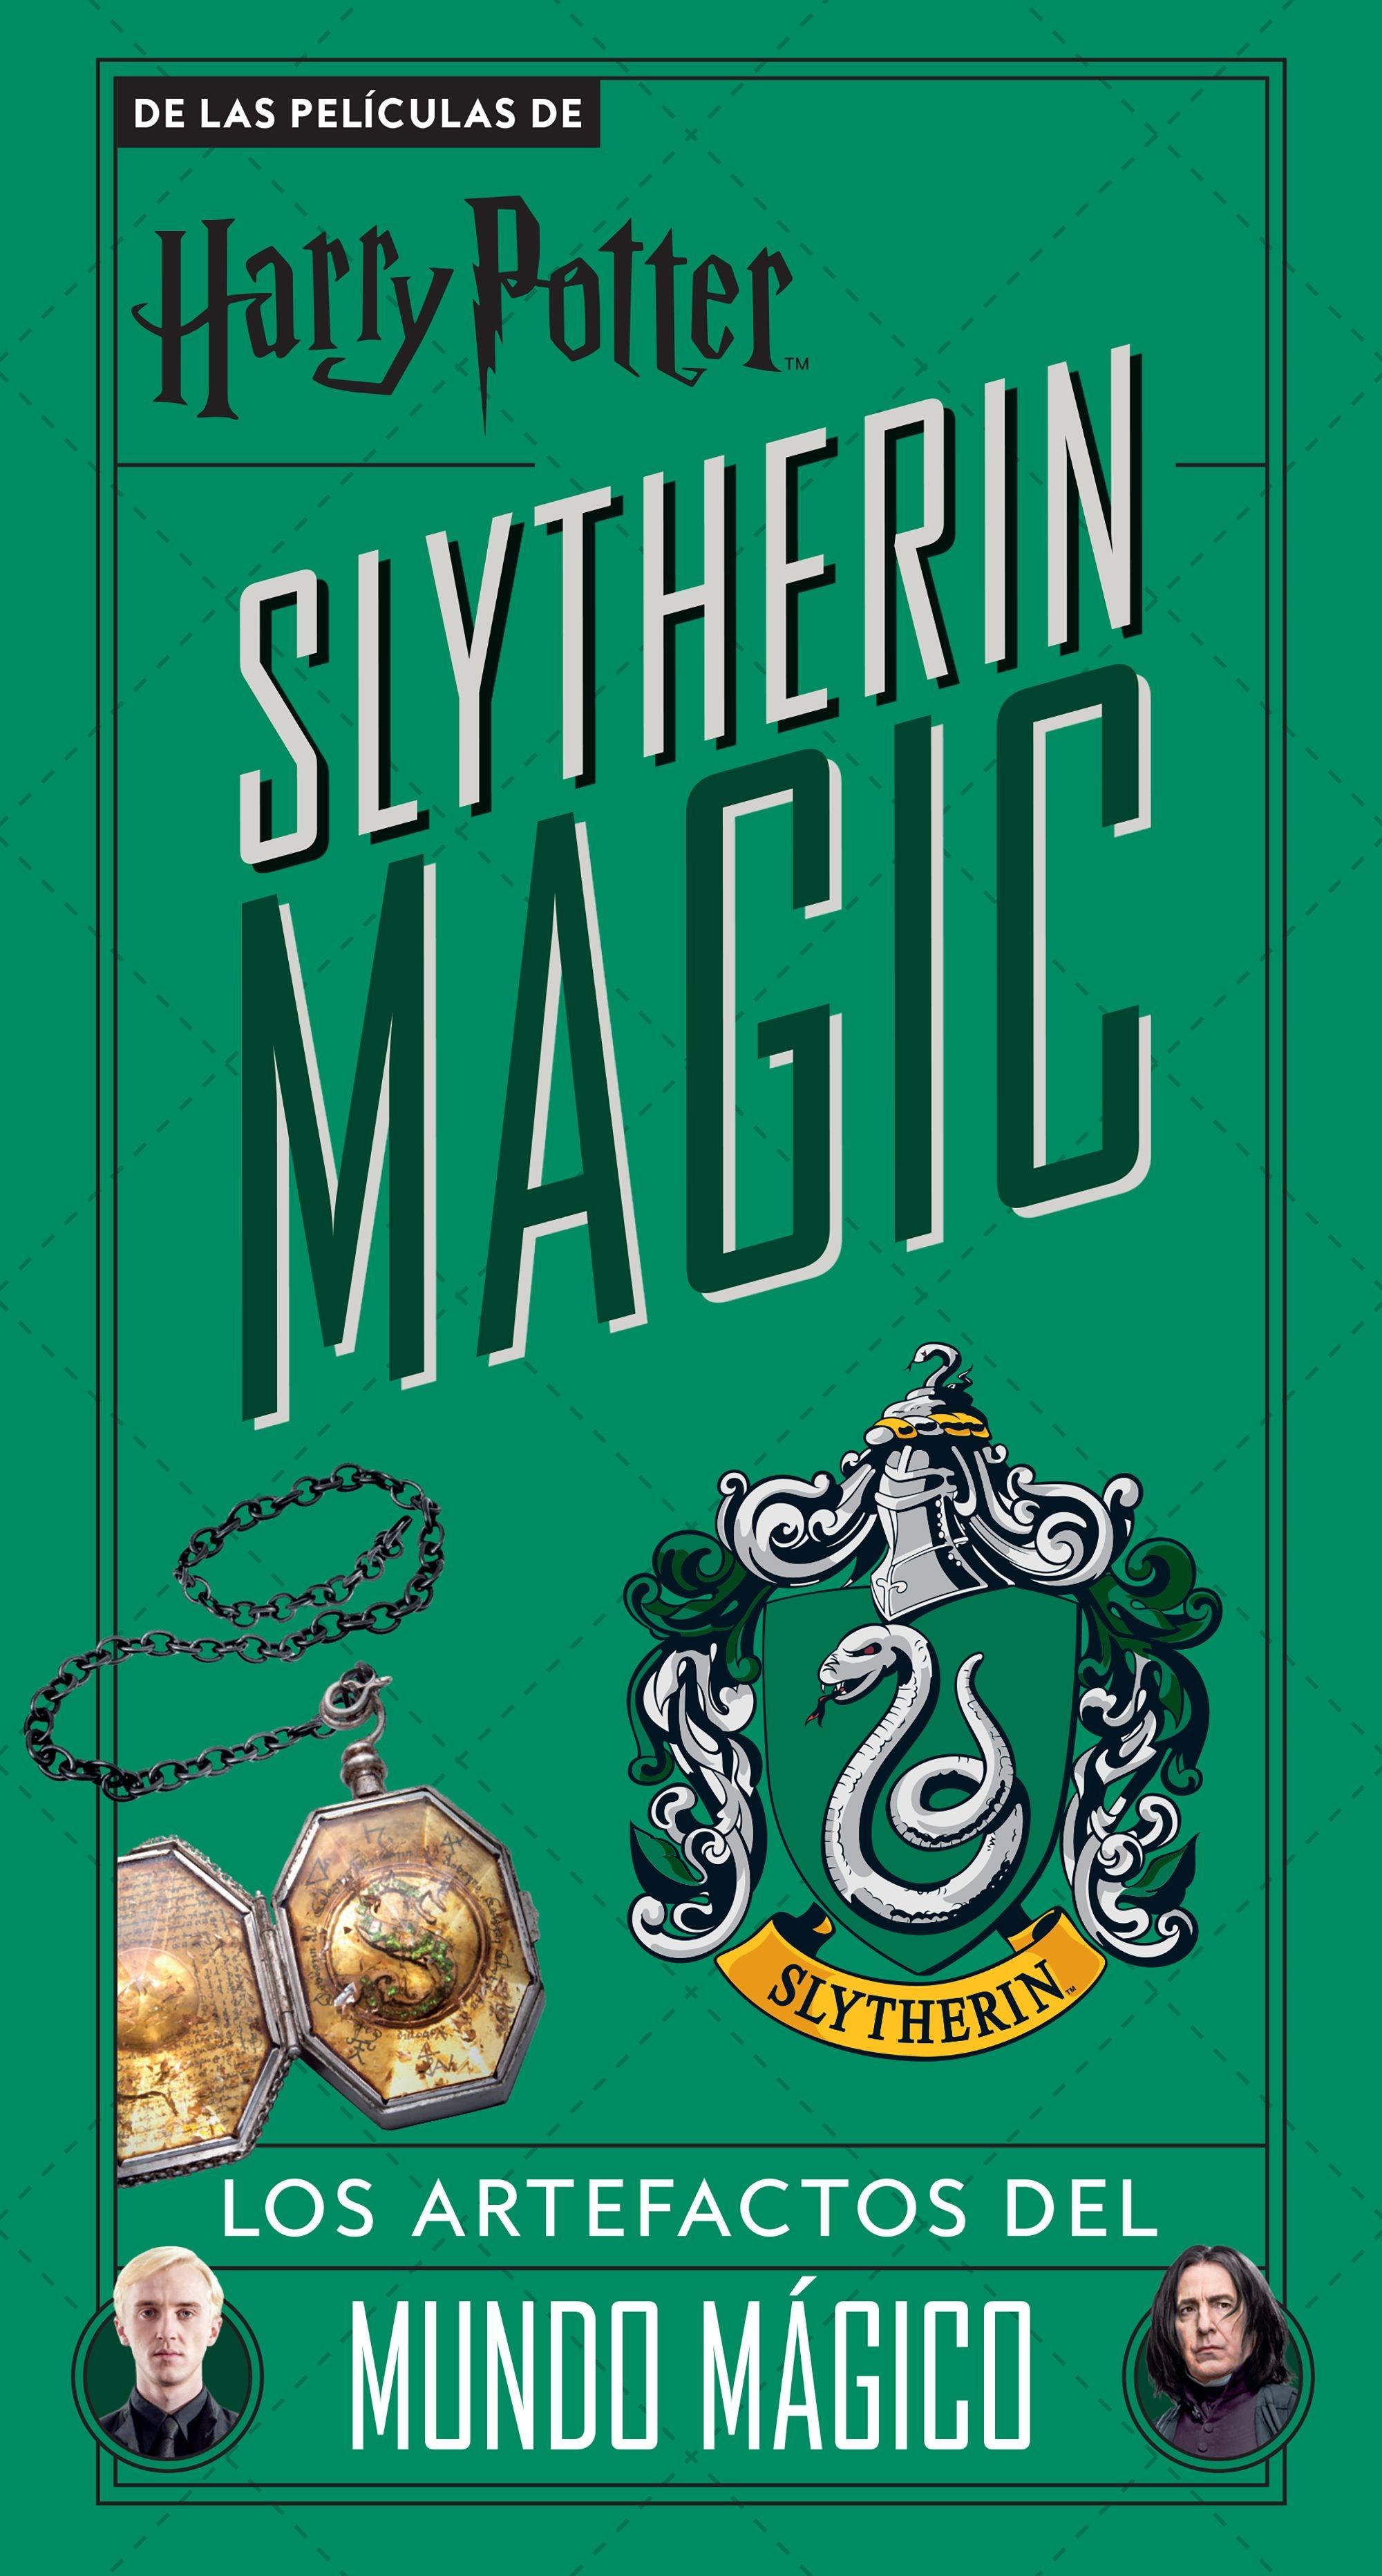 Harry Potter Slytherin Magic "Los Artefactos del Mundo Mágico". 